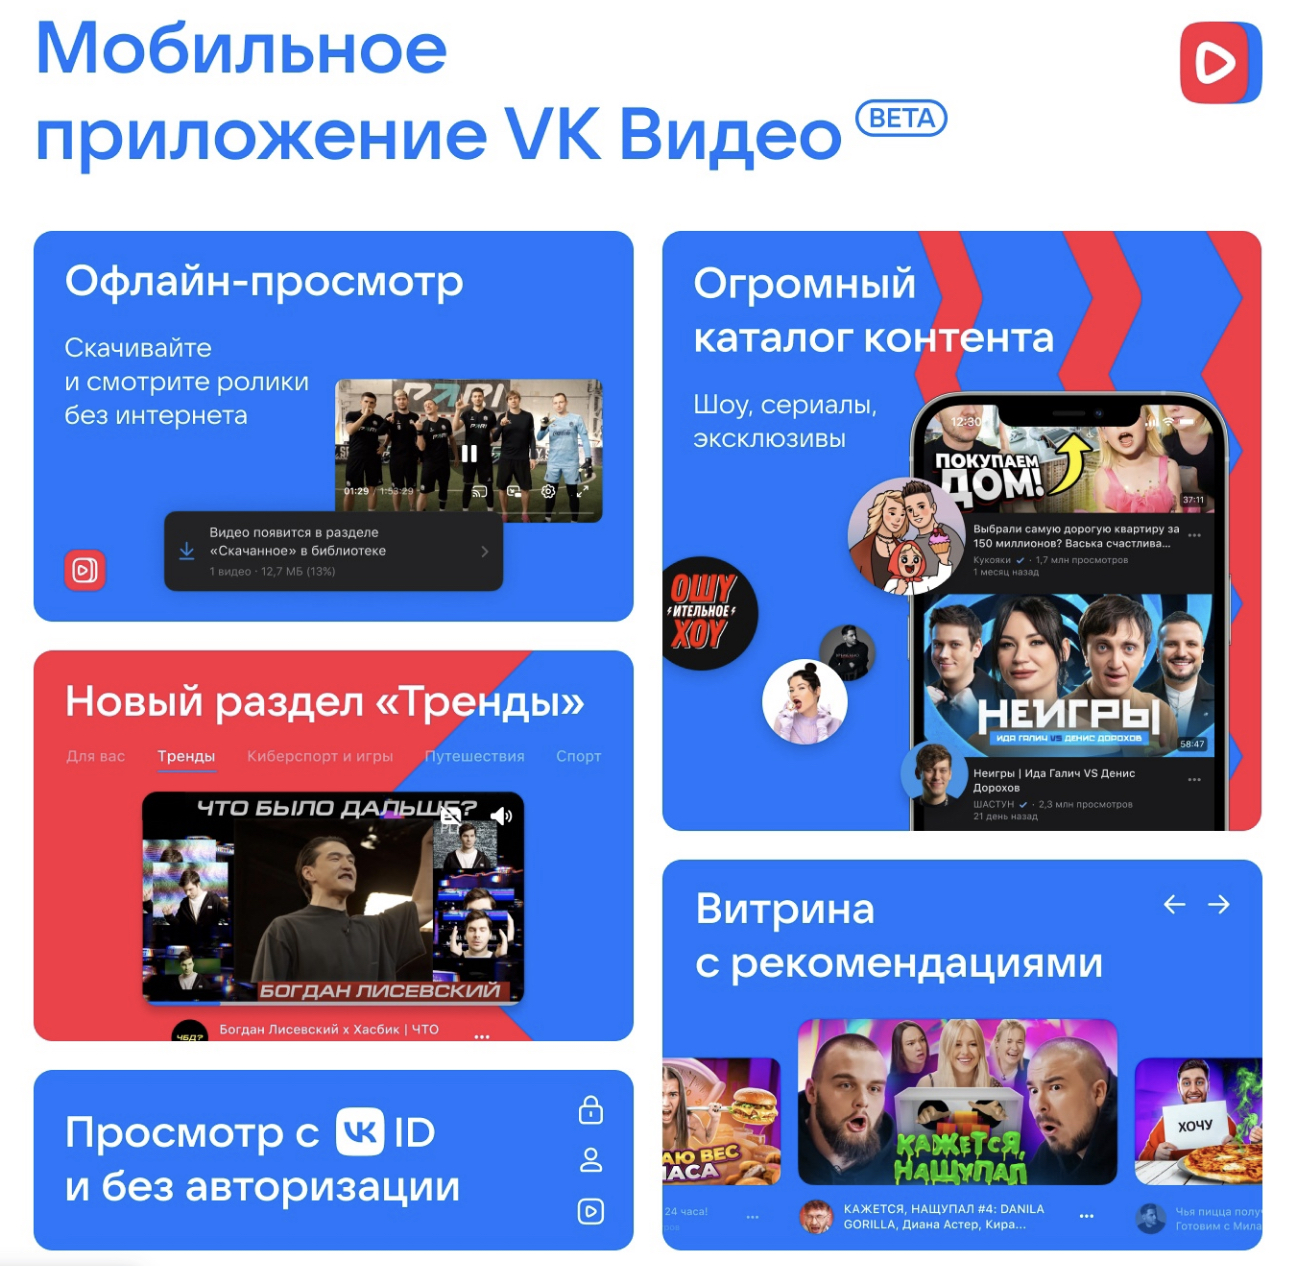 VK запустила бета-версию мобильного приложения «VK Видео» (фото 1)